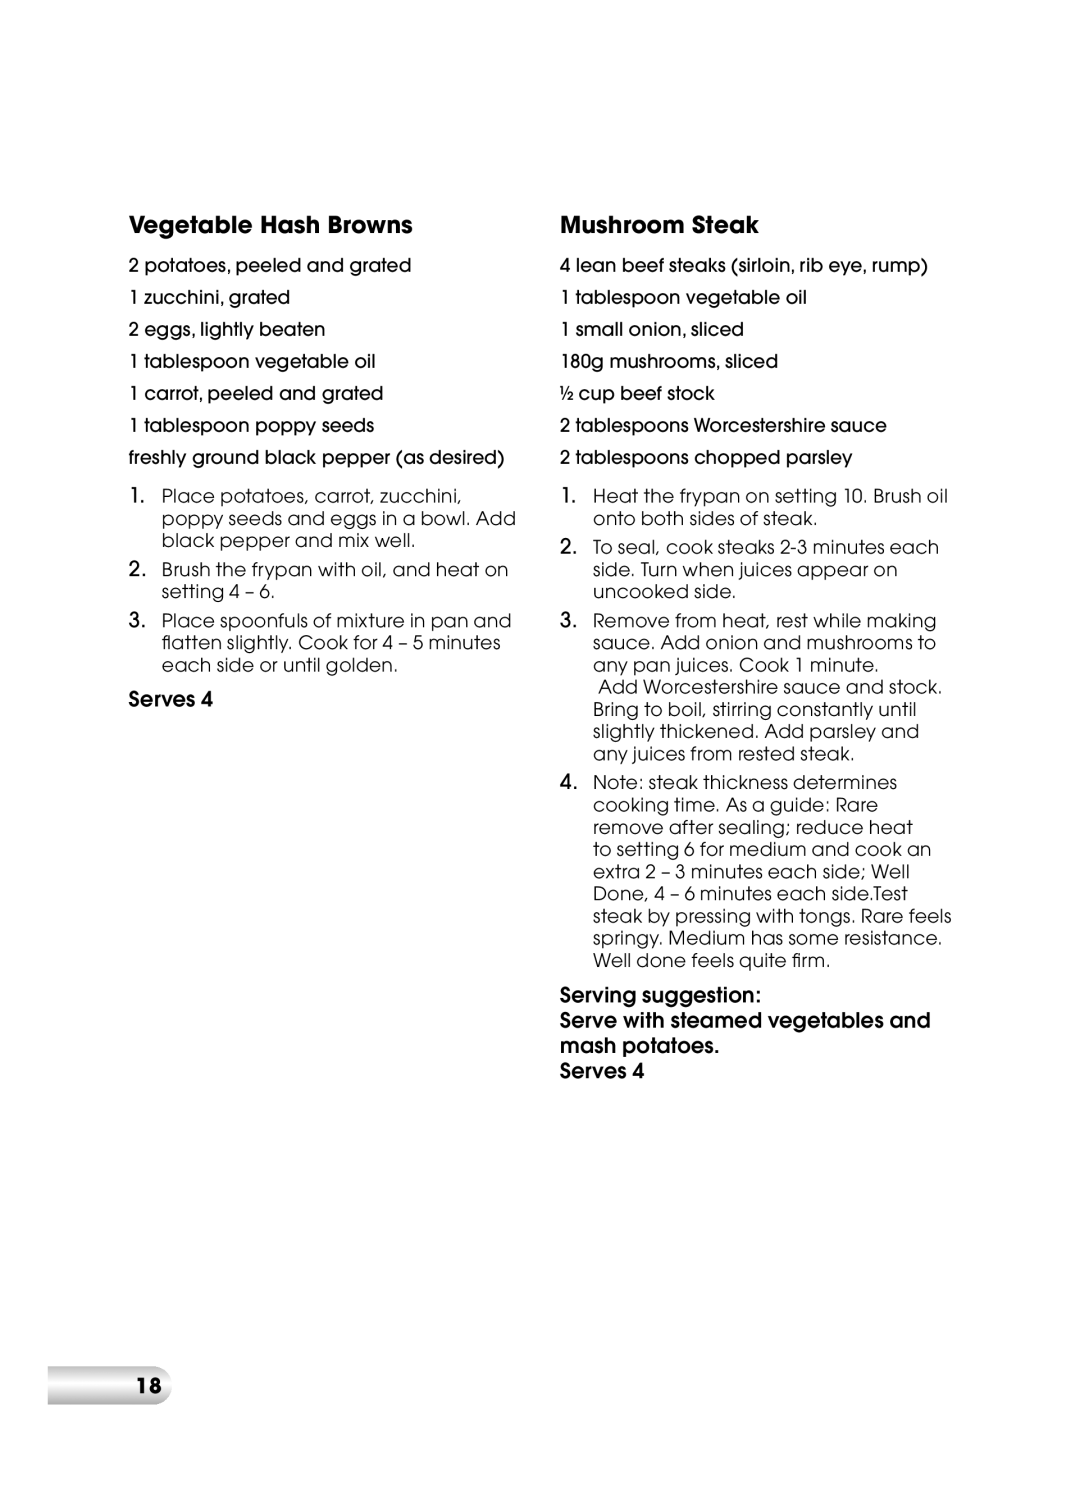 Kambrook KEF120 manual Vegetable Hash Browns, Mushroom Steak 